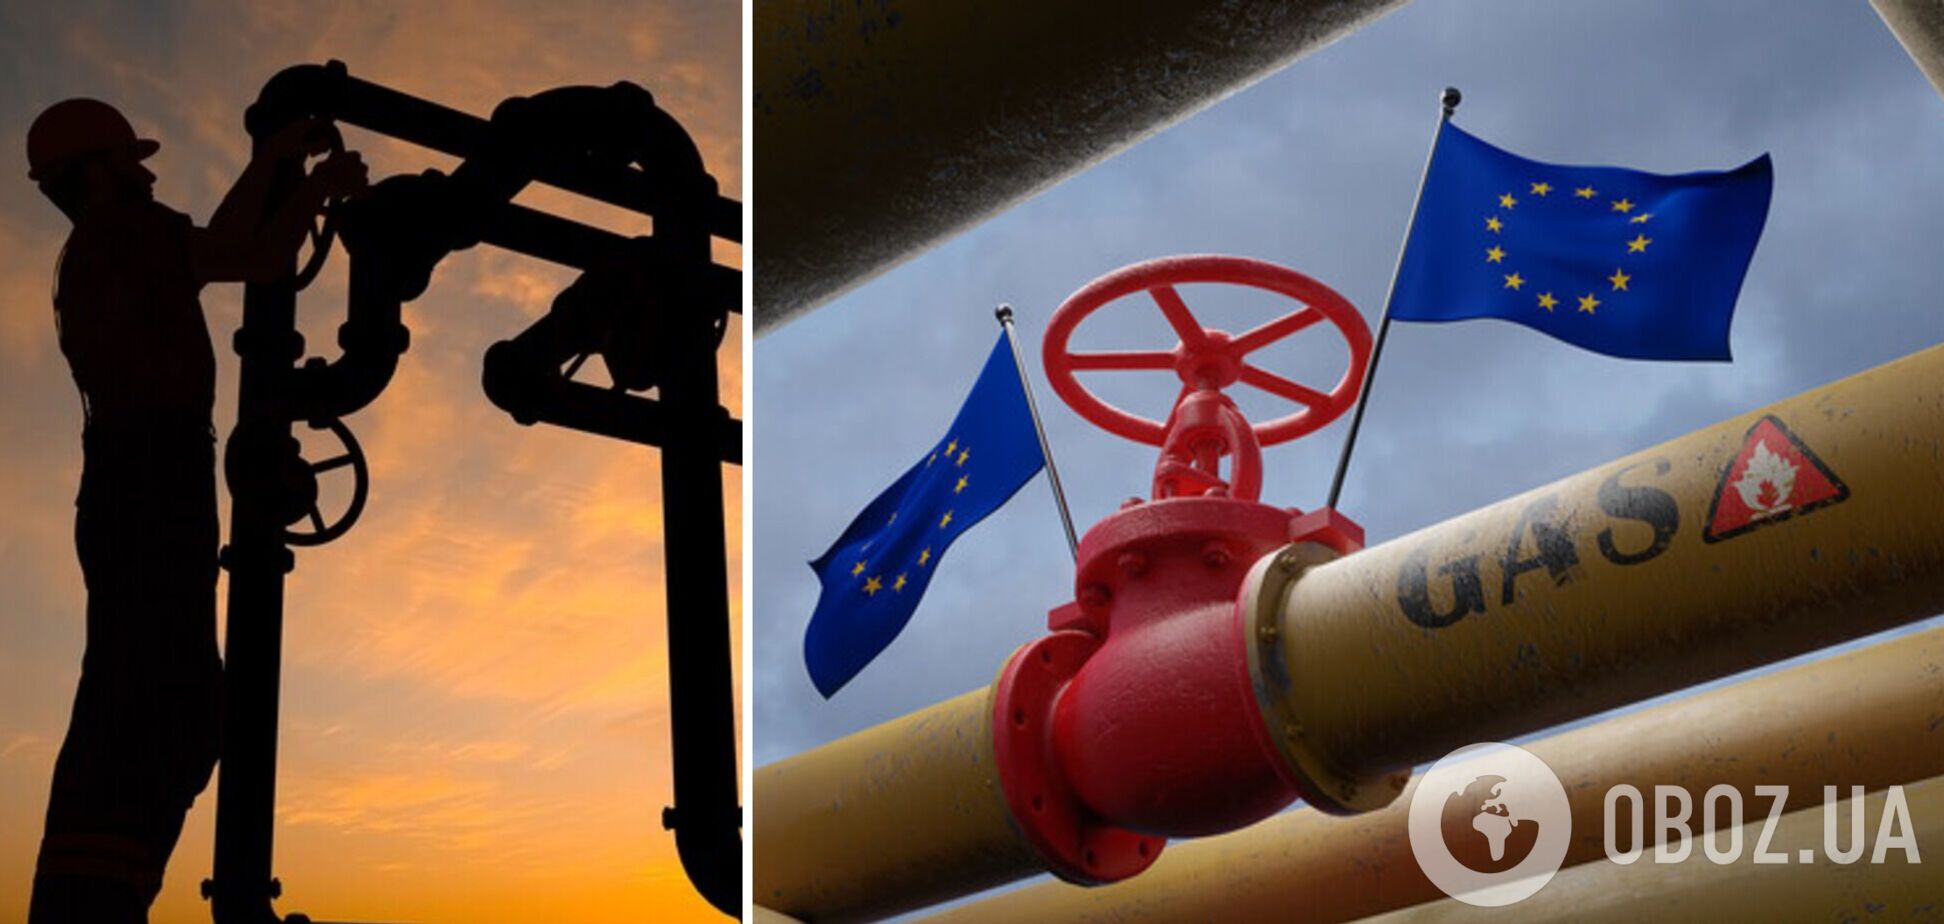 Заборона на експорт газу призвела до скорочення приватного газовидобутку в Україні, – Диковицький